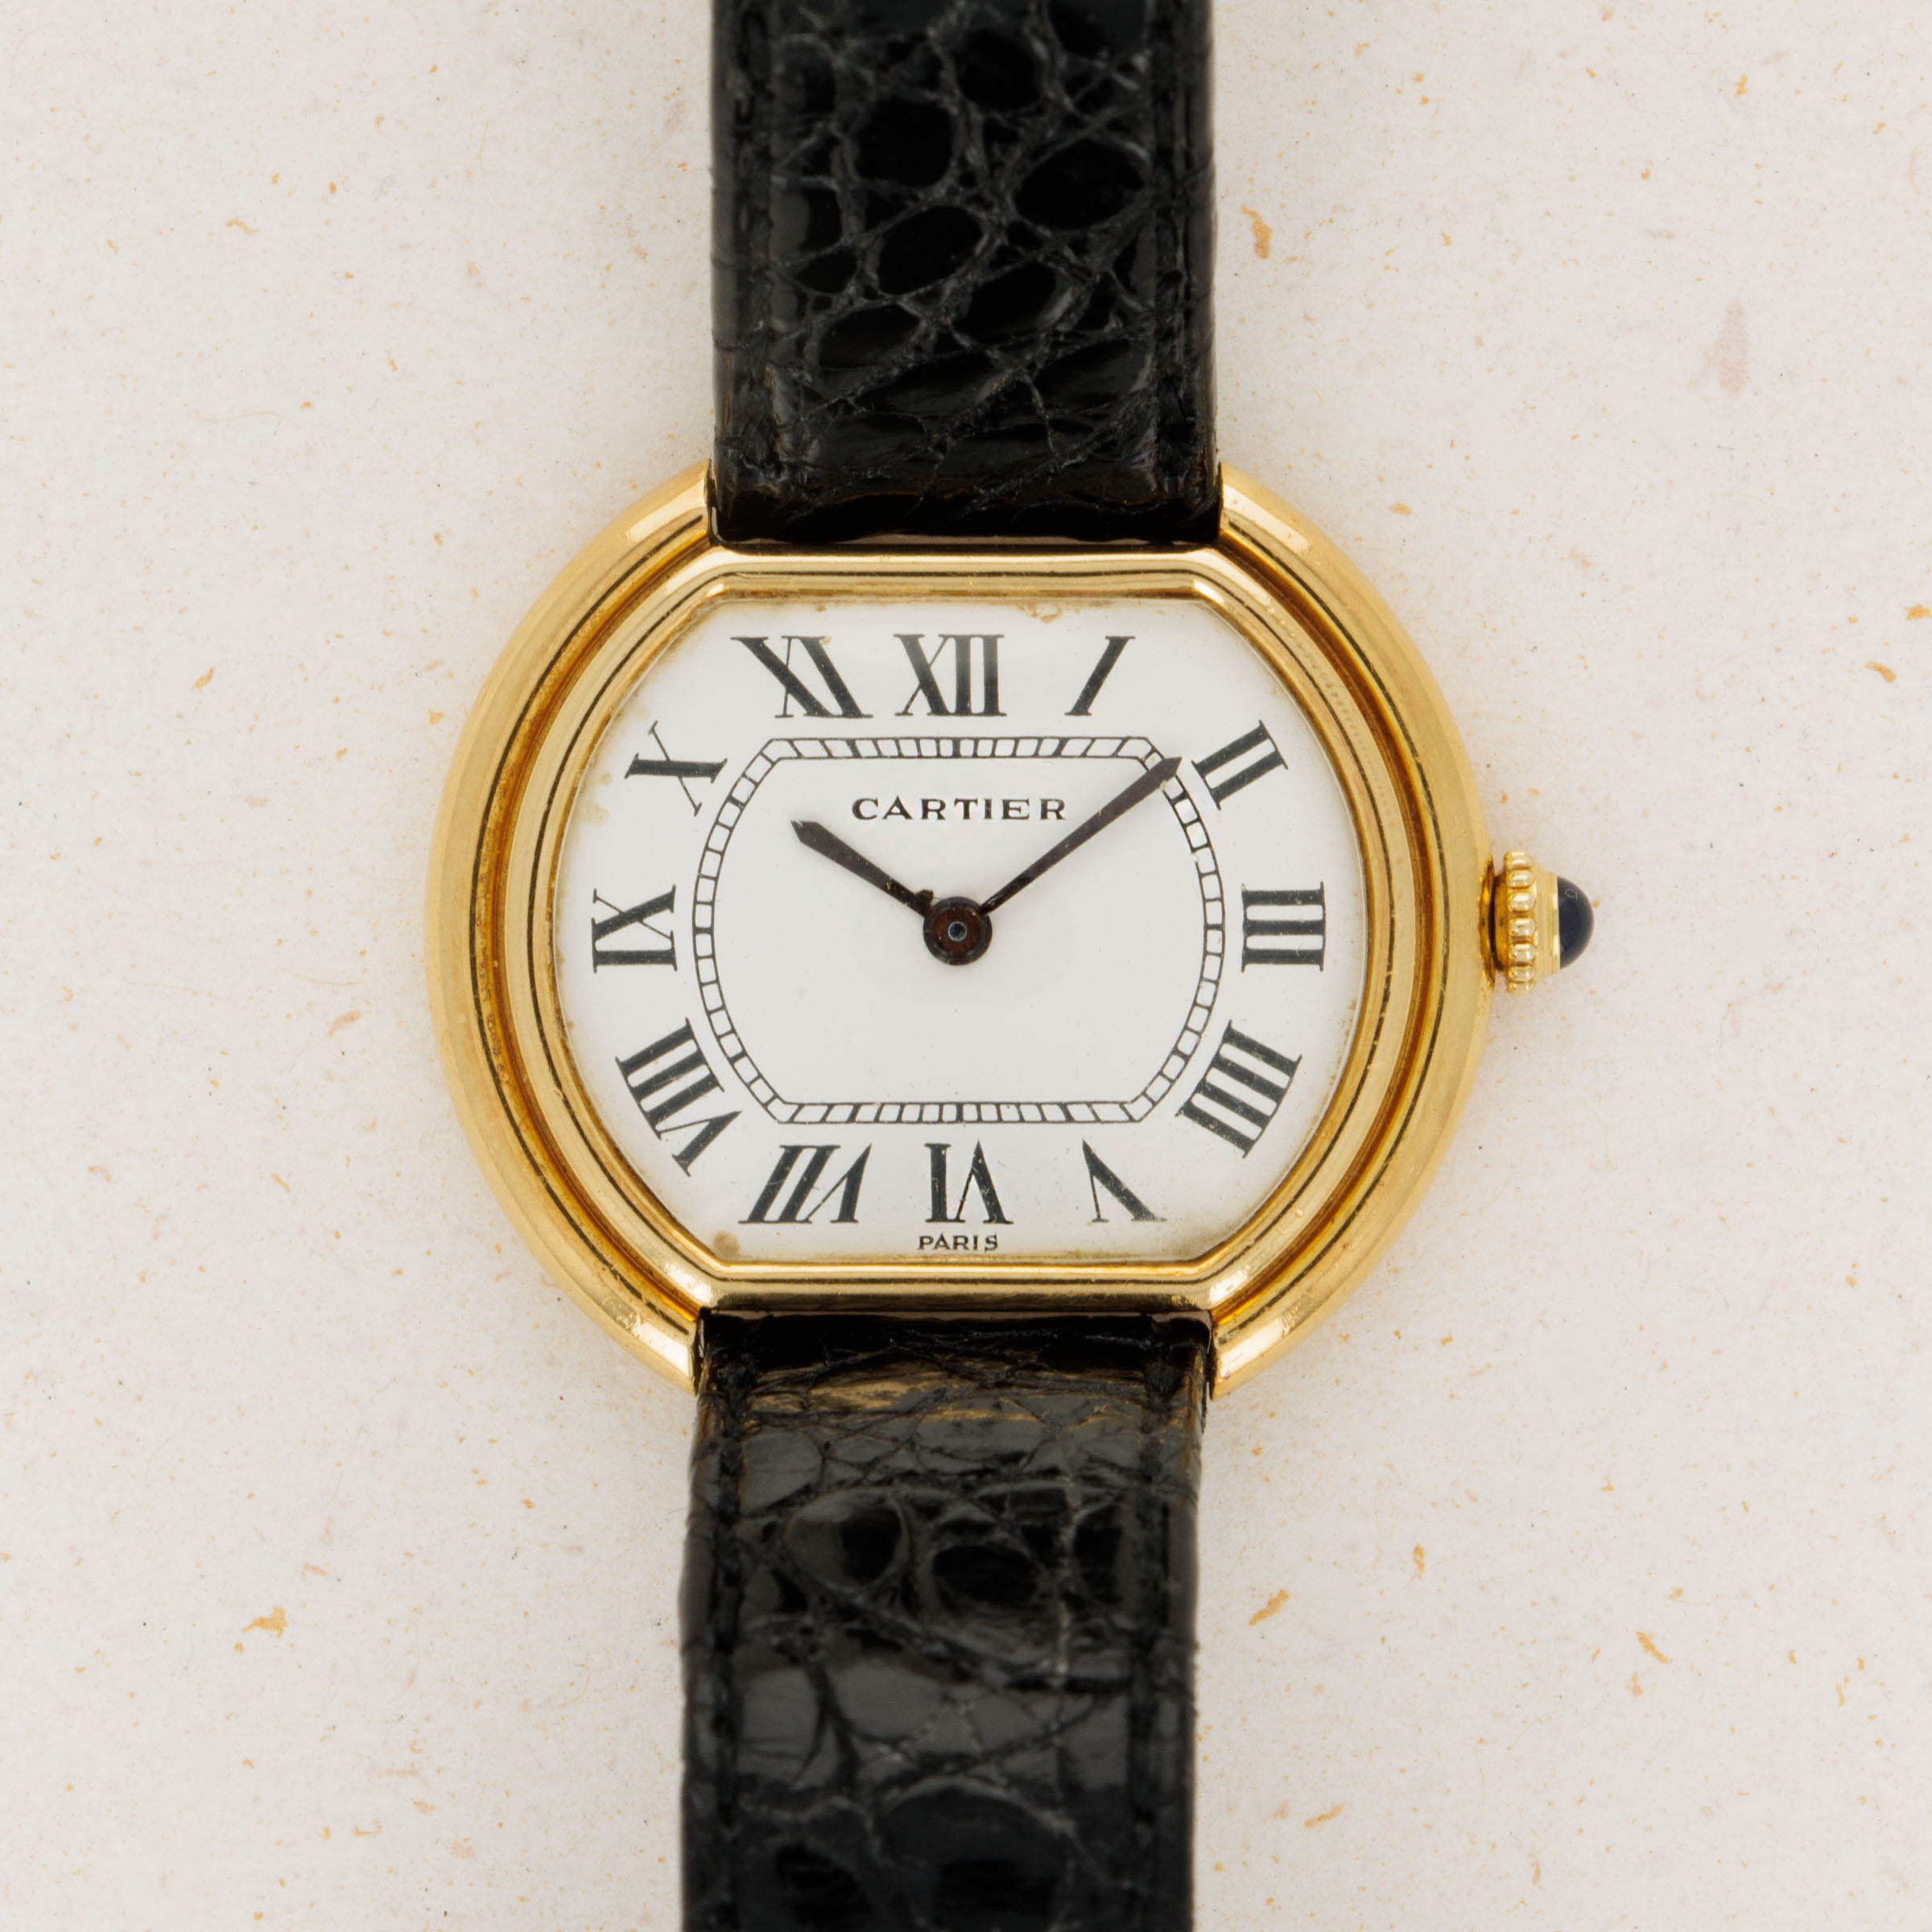 Cartier Paris Gondole 18k YG 78091 | Auctions | Loupe This